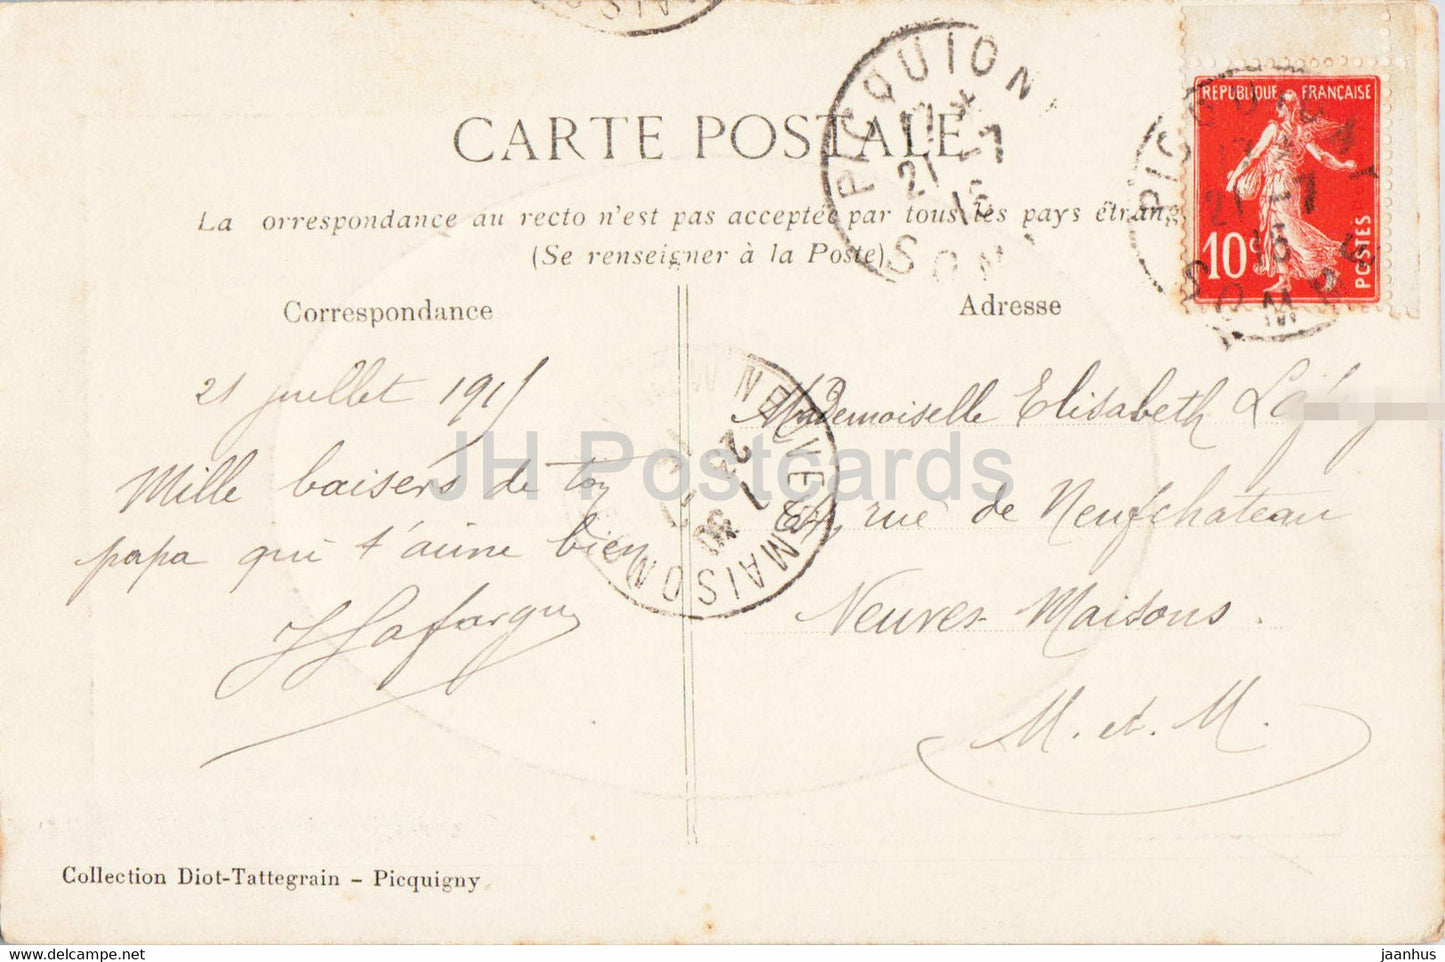 Picquigny - Ruines du Château féodal des Vidames d'Amiens - Porte de la Cour - carte postale ancienne - 1916 - France - utilisé